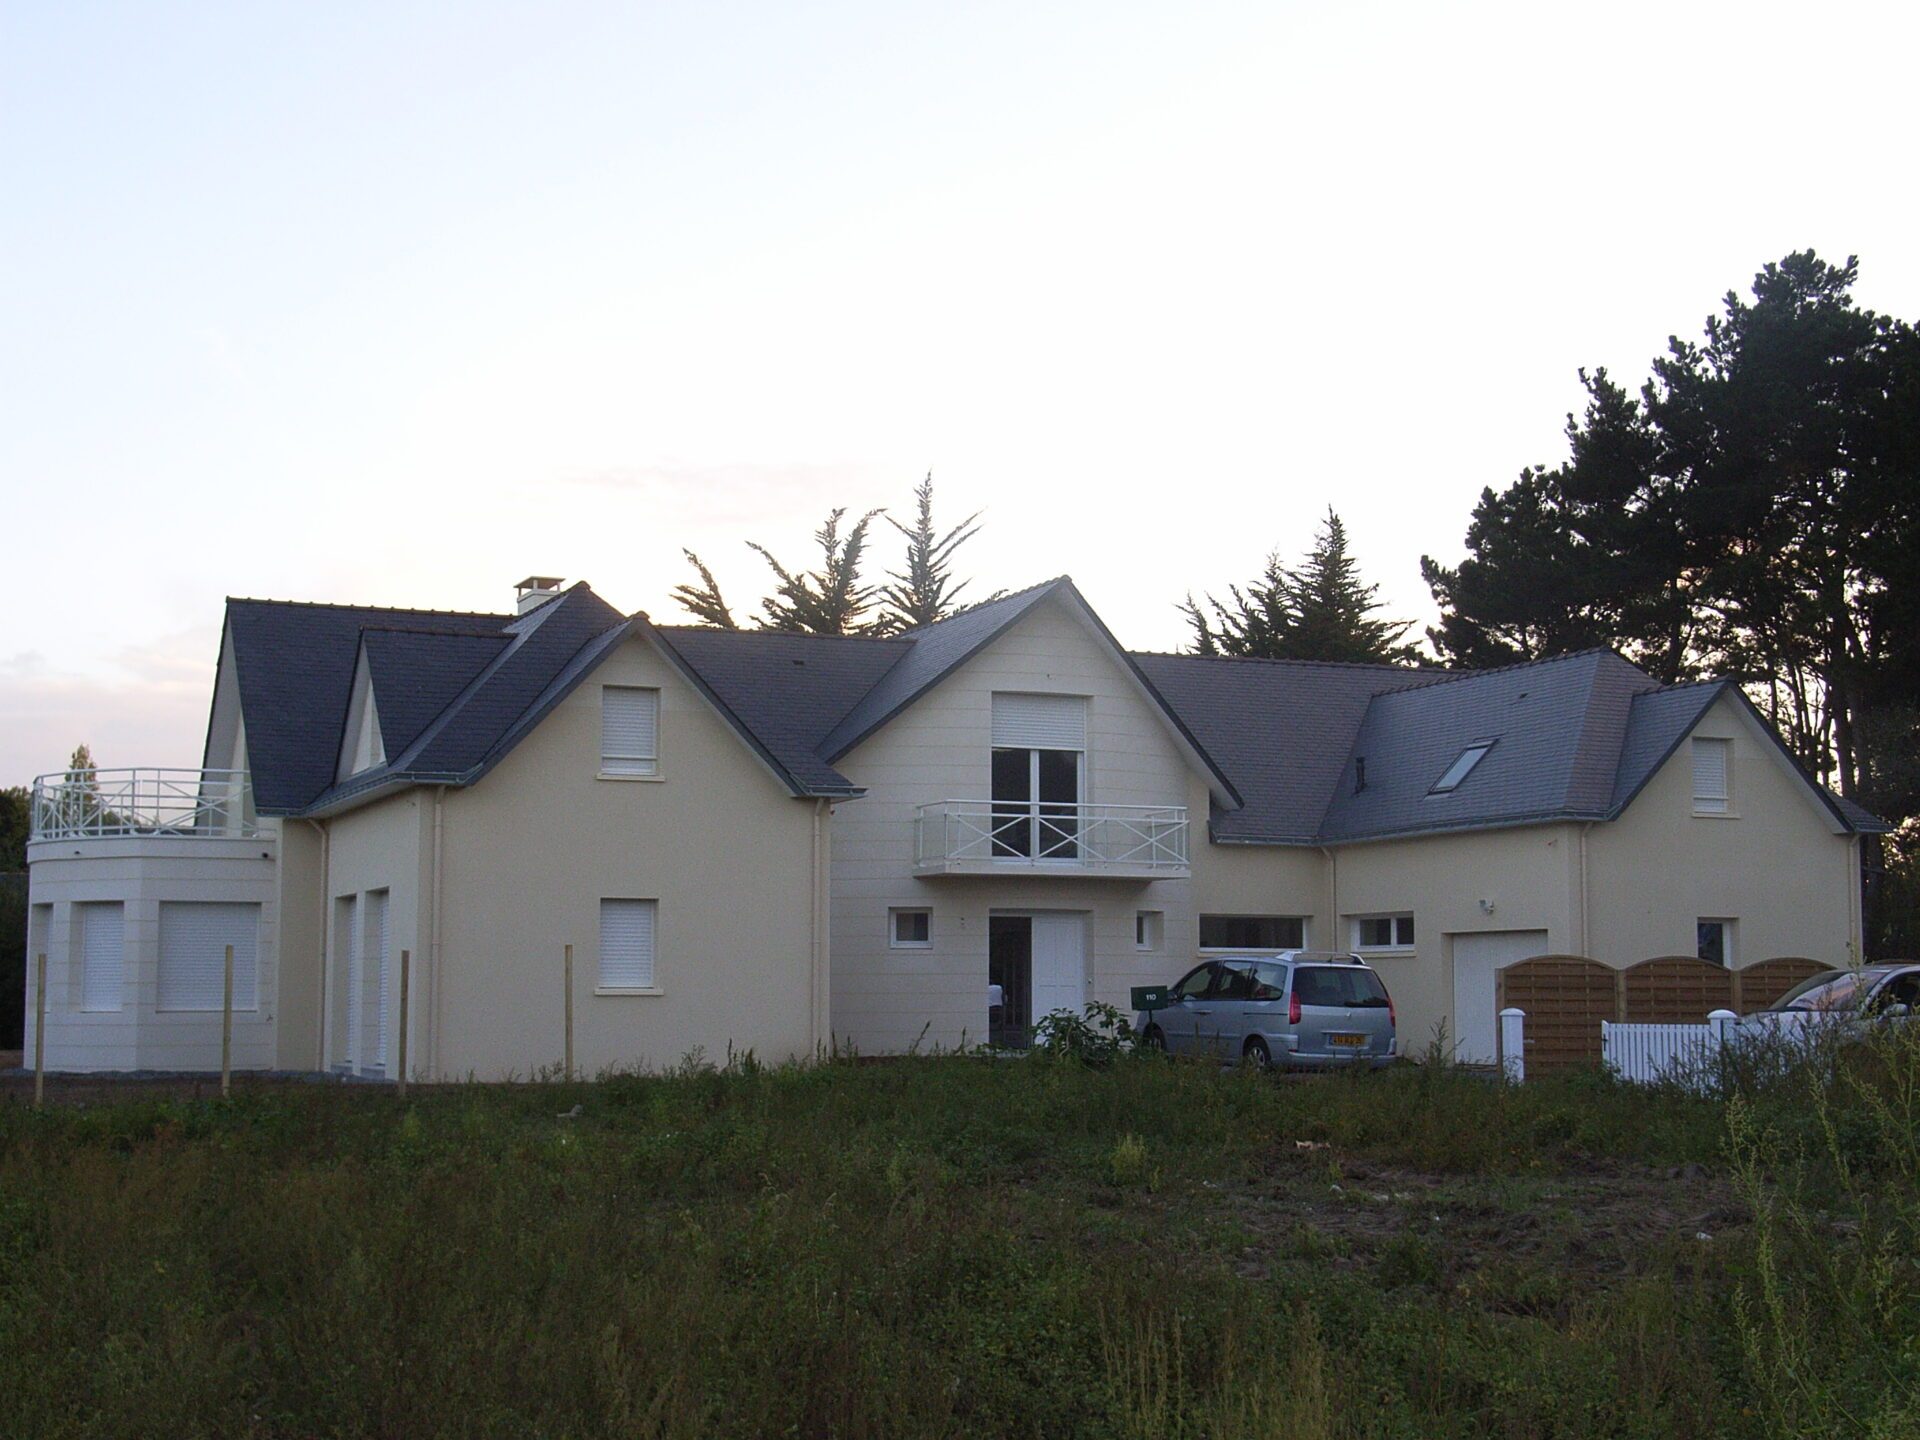 Maison avec bardage bois et grandes baies vitrées ainsi qu'une toiture en ardoise